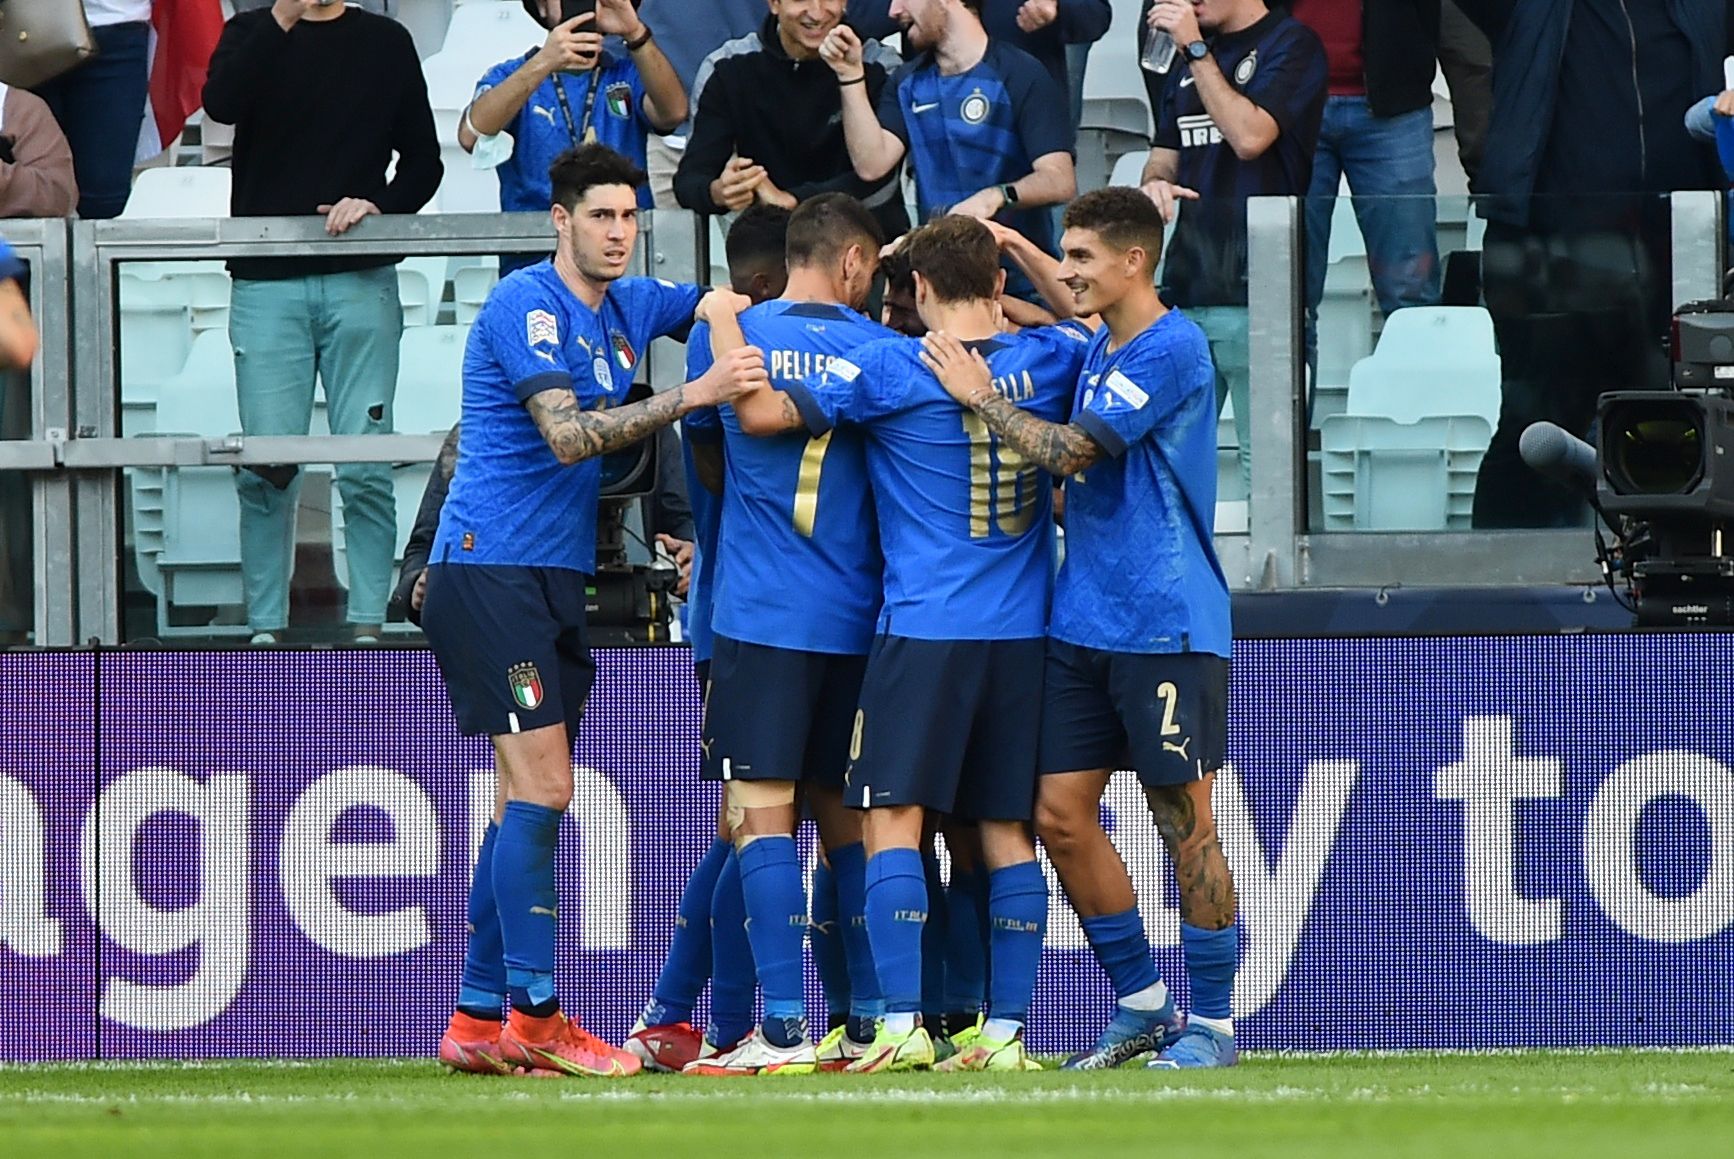 L’Italia ha conquistato il bronzo nella Nations League, ha spinto il Belgio 2:1 a Torino